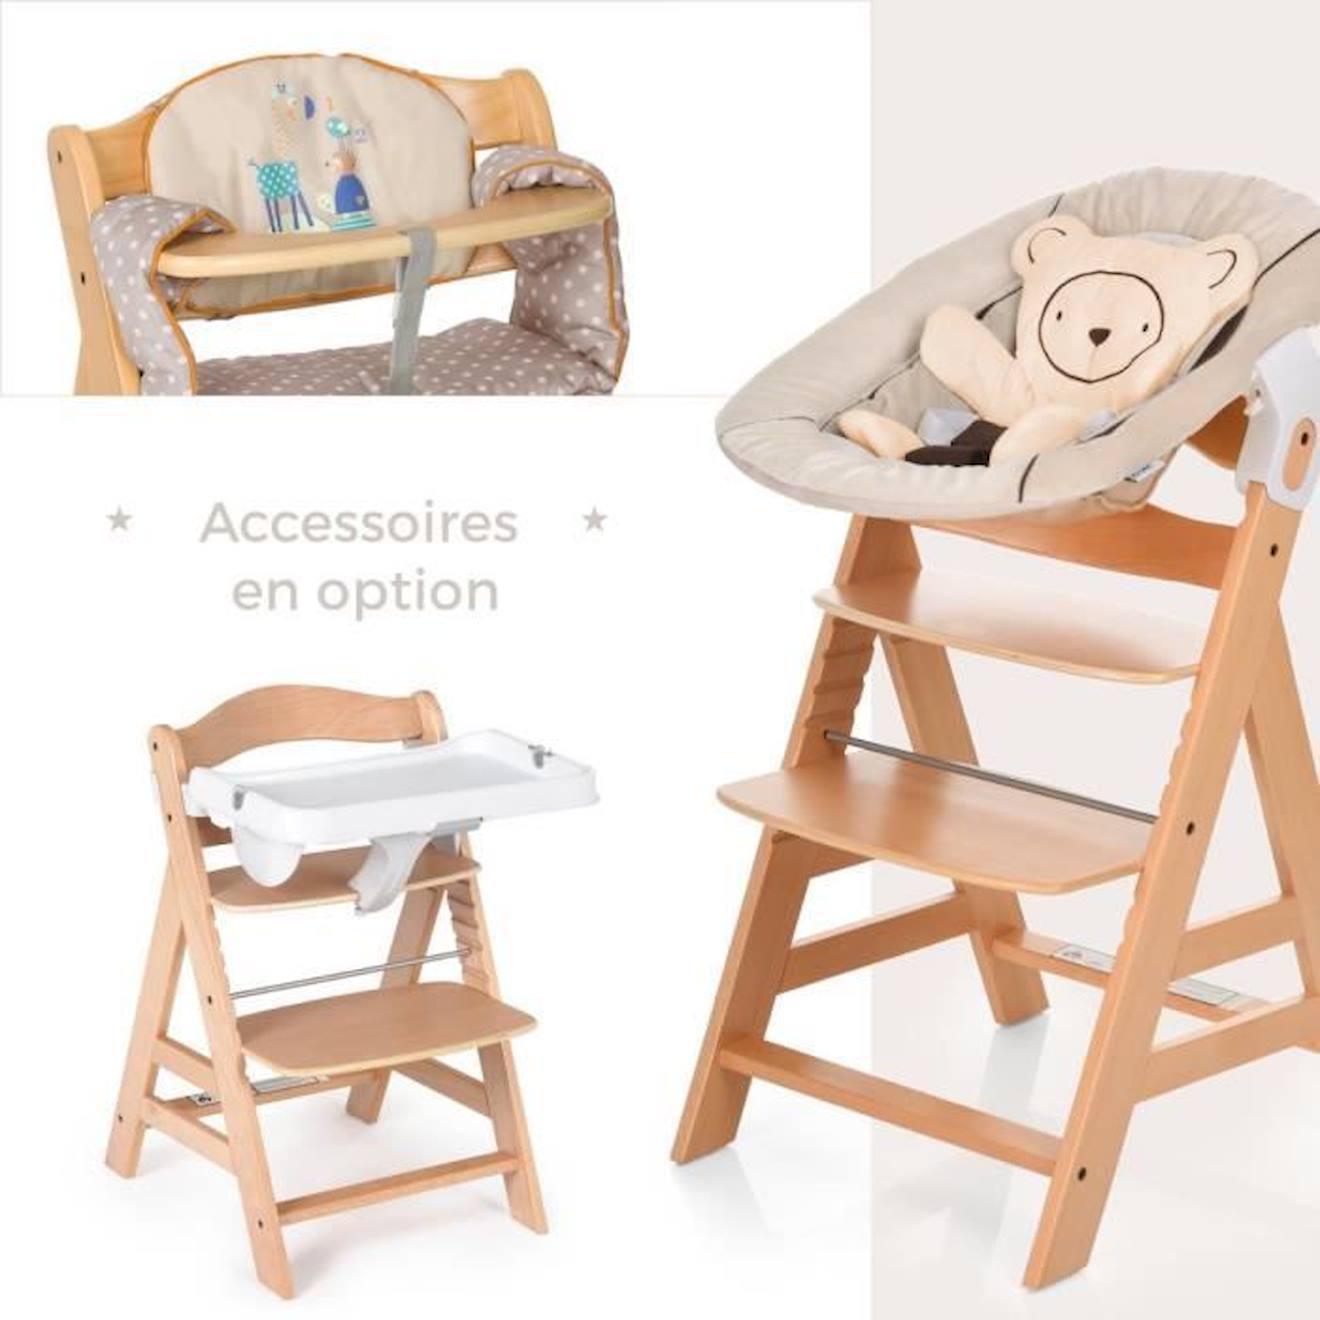 Achat / Vente - Chaise haute Hauck Alpha+ Newborn en bois